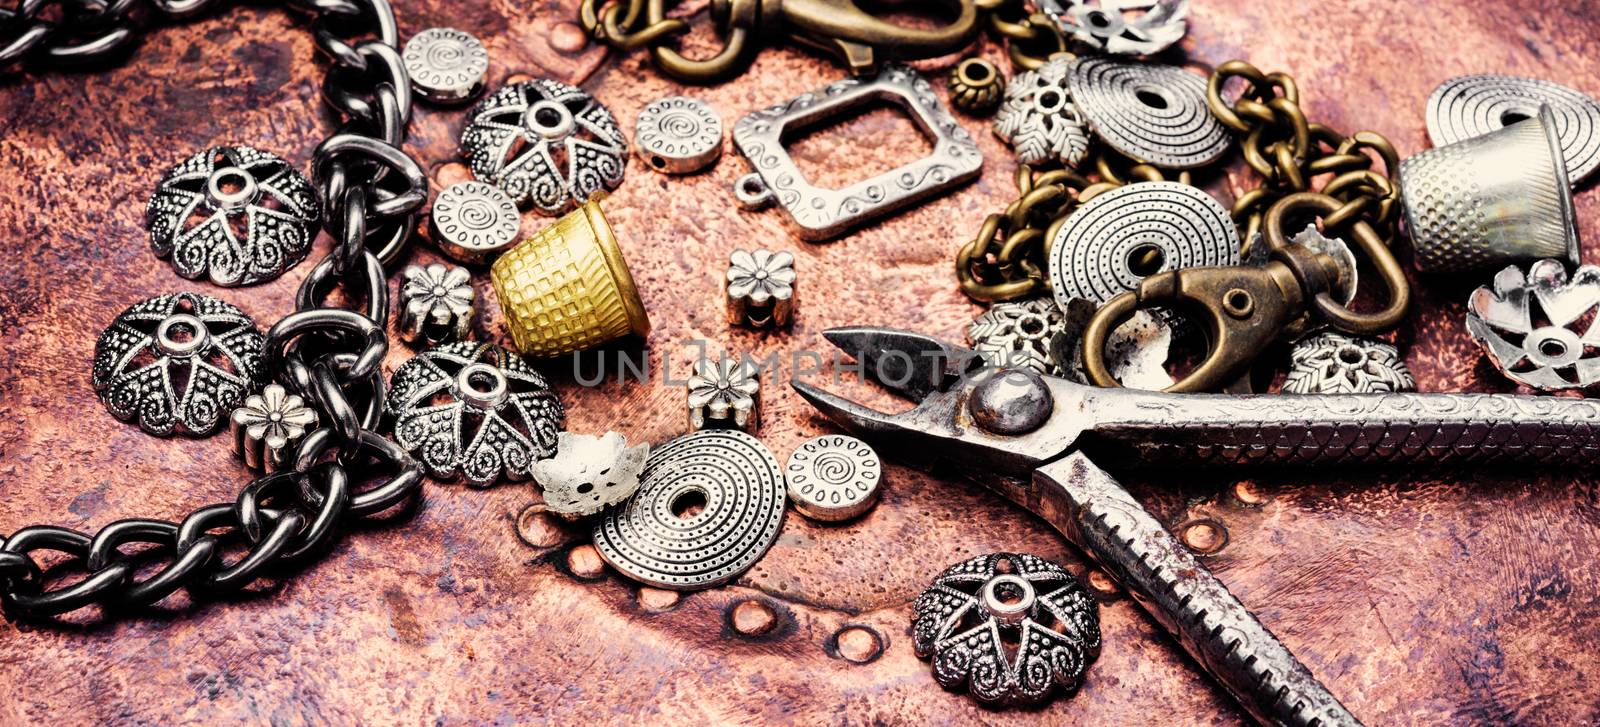 Jewelry and bijouterie by LMykola